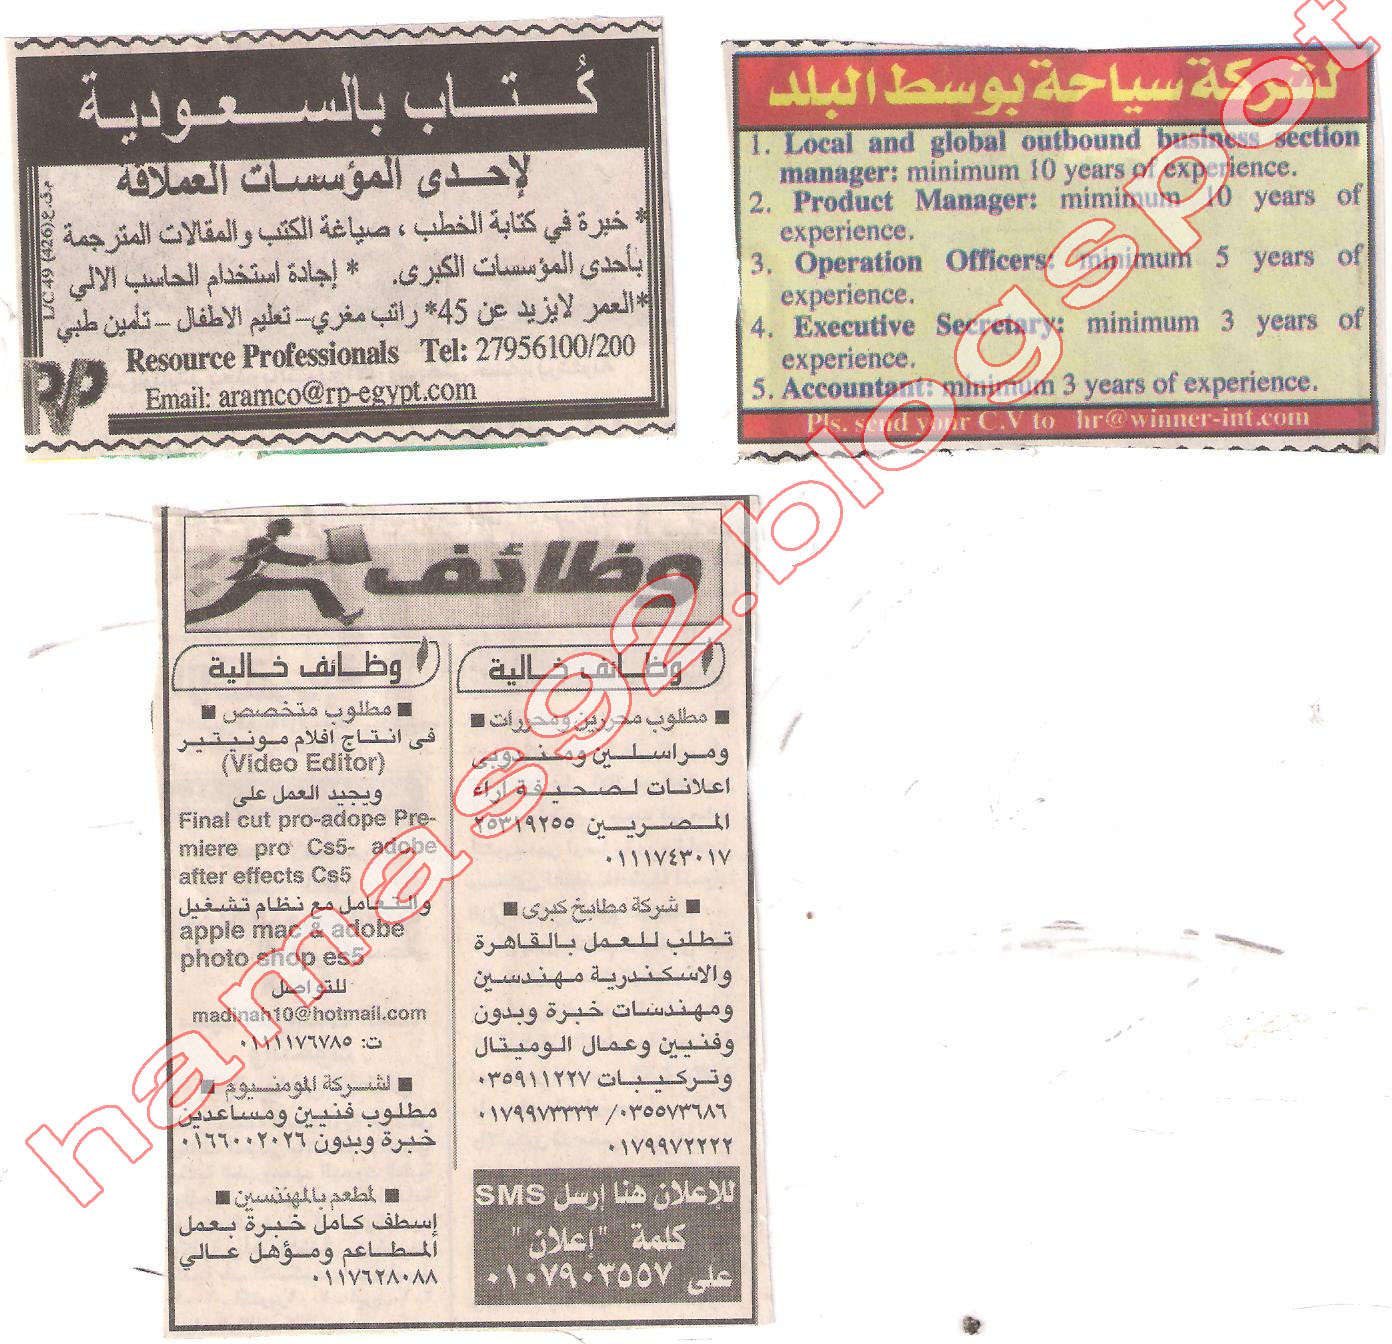 وظائف جريدة اخبار اليوم السبت 28 مايو 2011 - وظائف صحف مصر السبت 28 مايو 2011 Picture+004